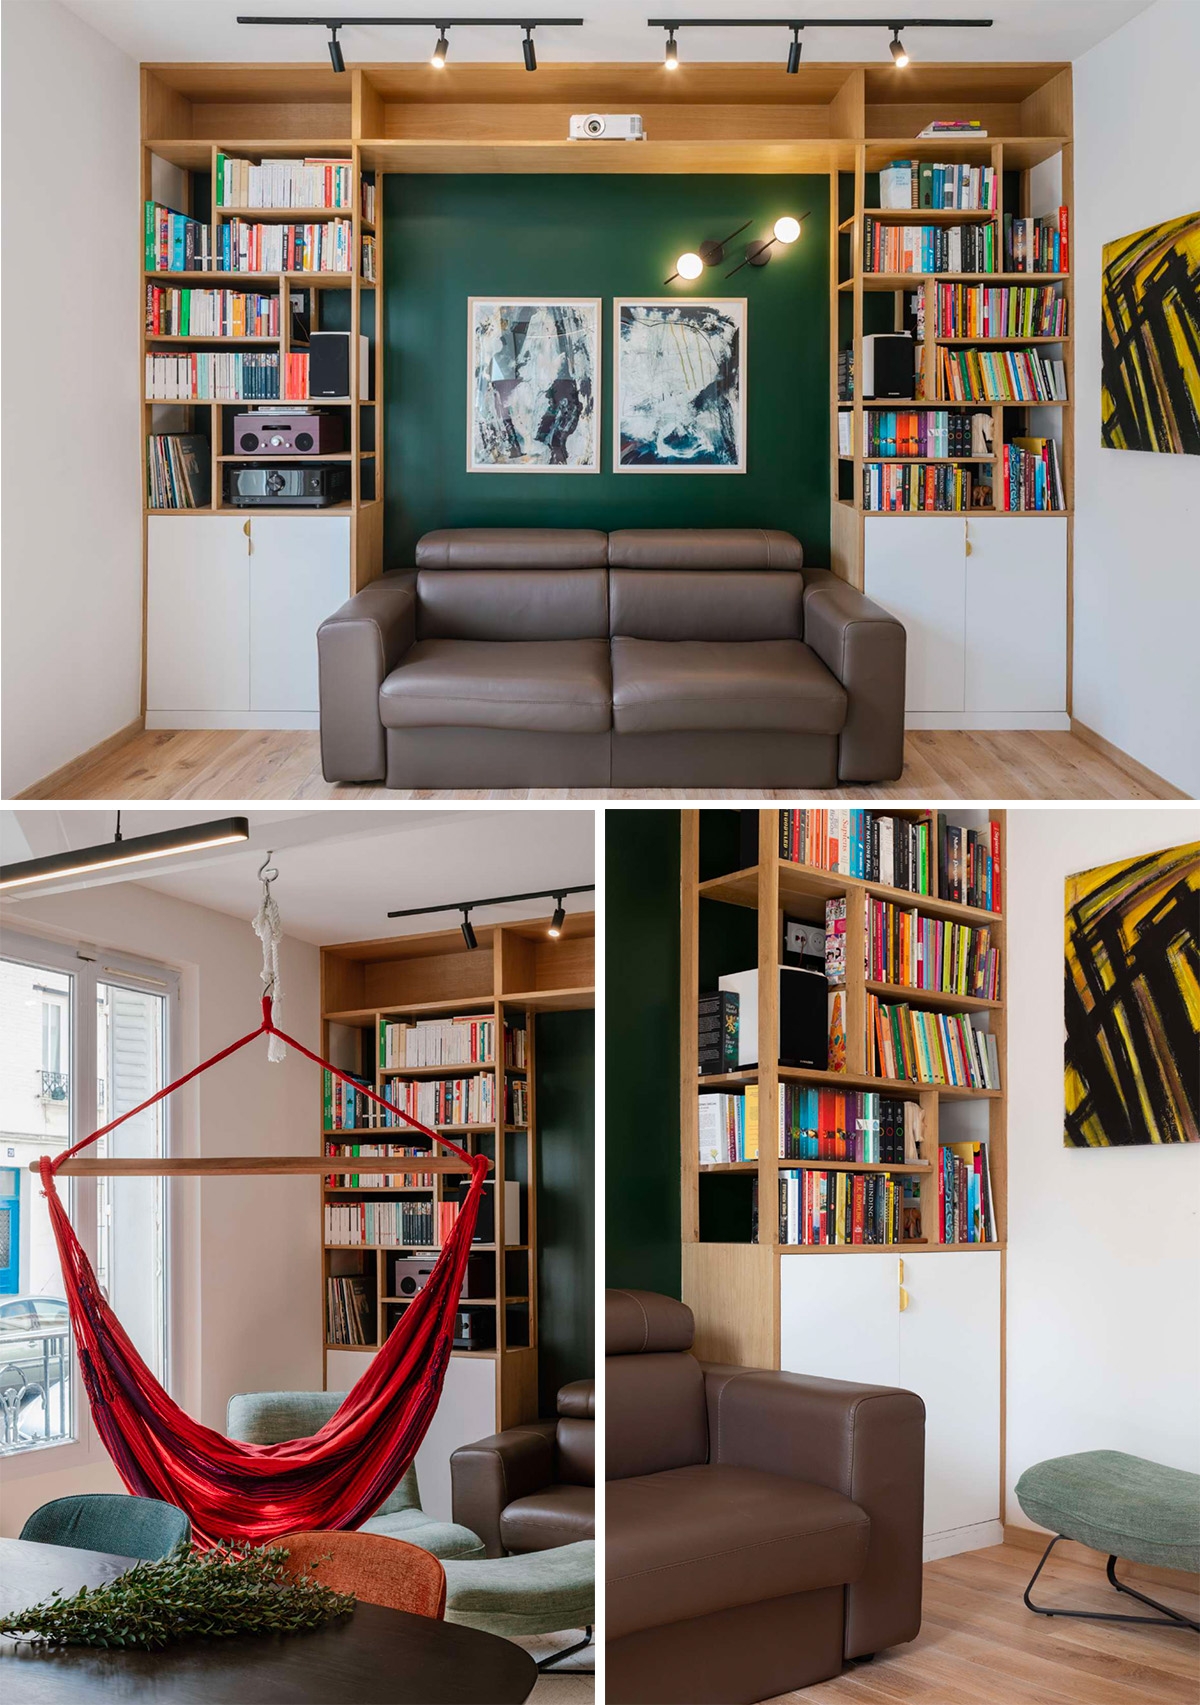 L'Atelier Varenne a imaginé un moyen d'intégrer la collection familiale de livres dans une architecture aux formes contrastées avec des matériaux élémentaires.